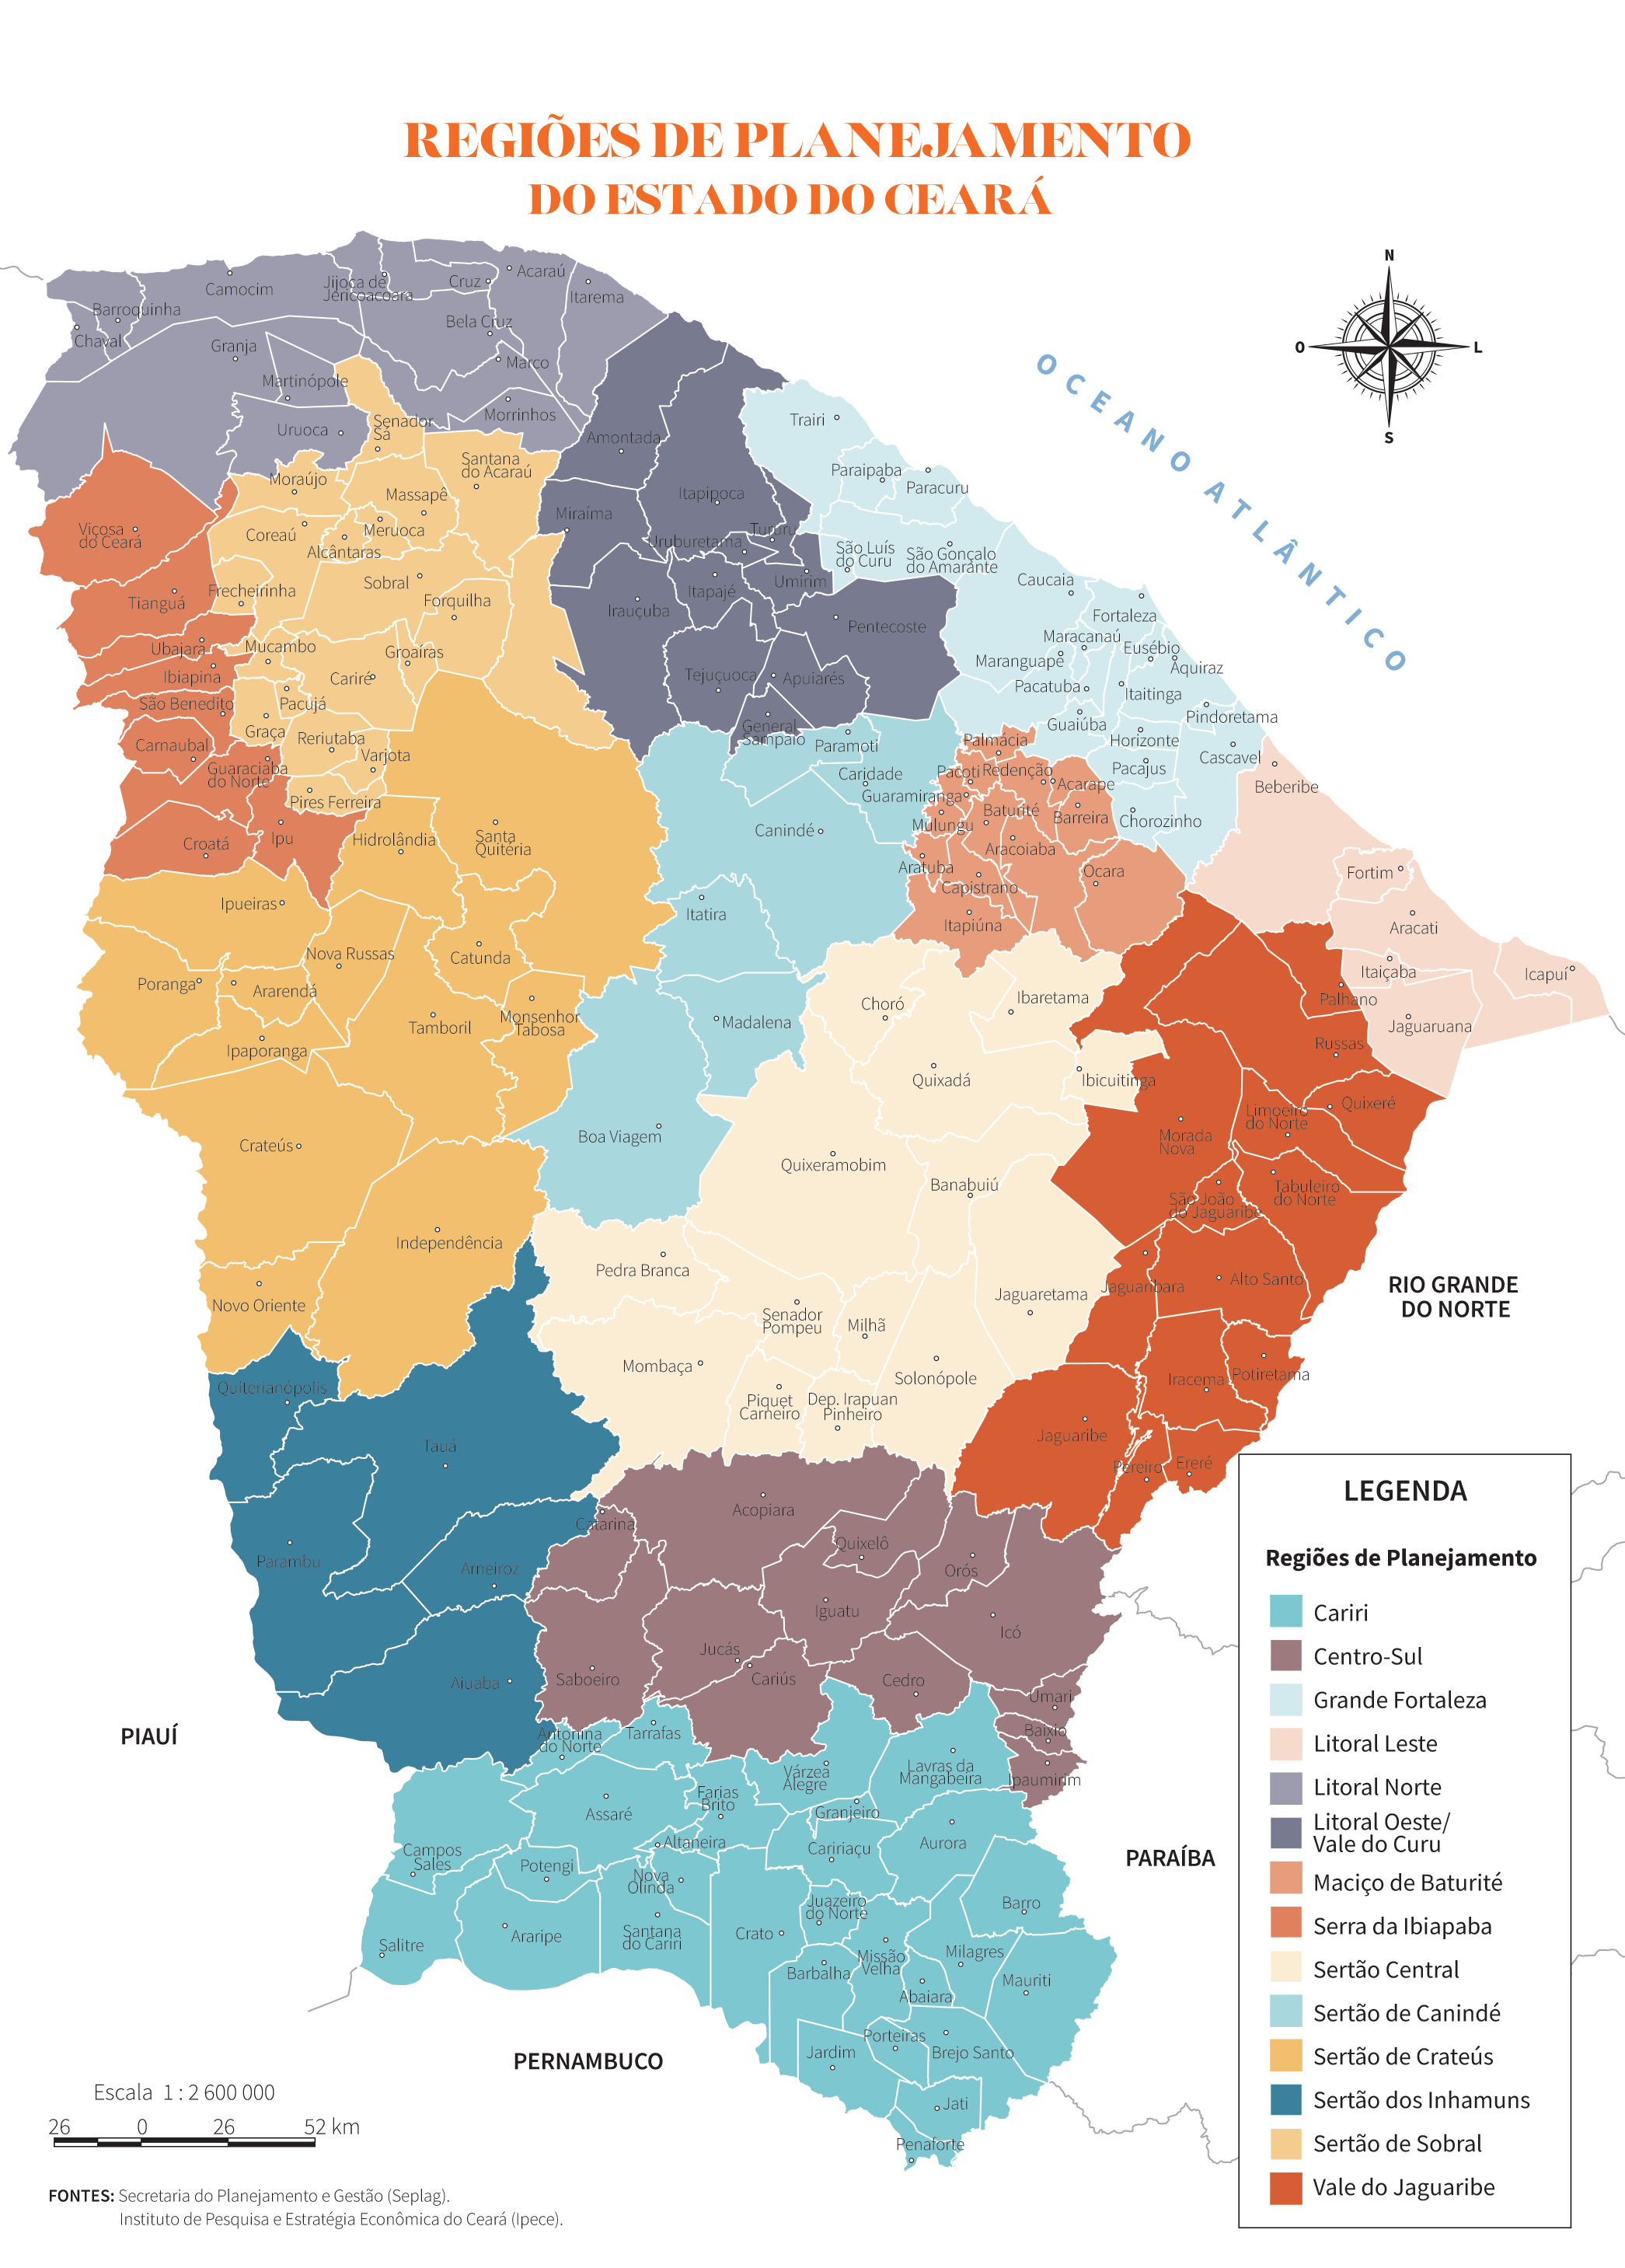 Regiões de Planejamento do Estado do Ceará - Anuário do Ceará